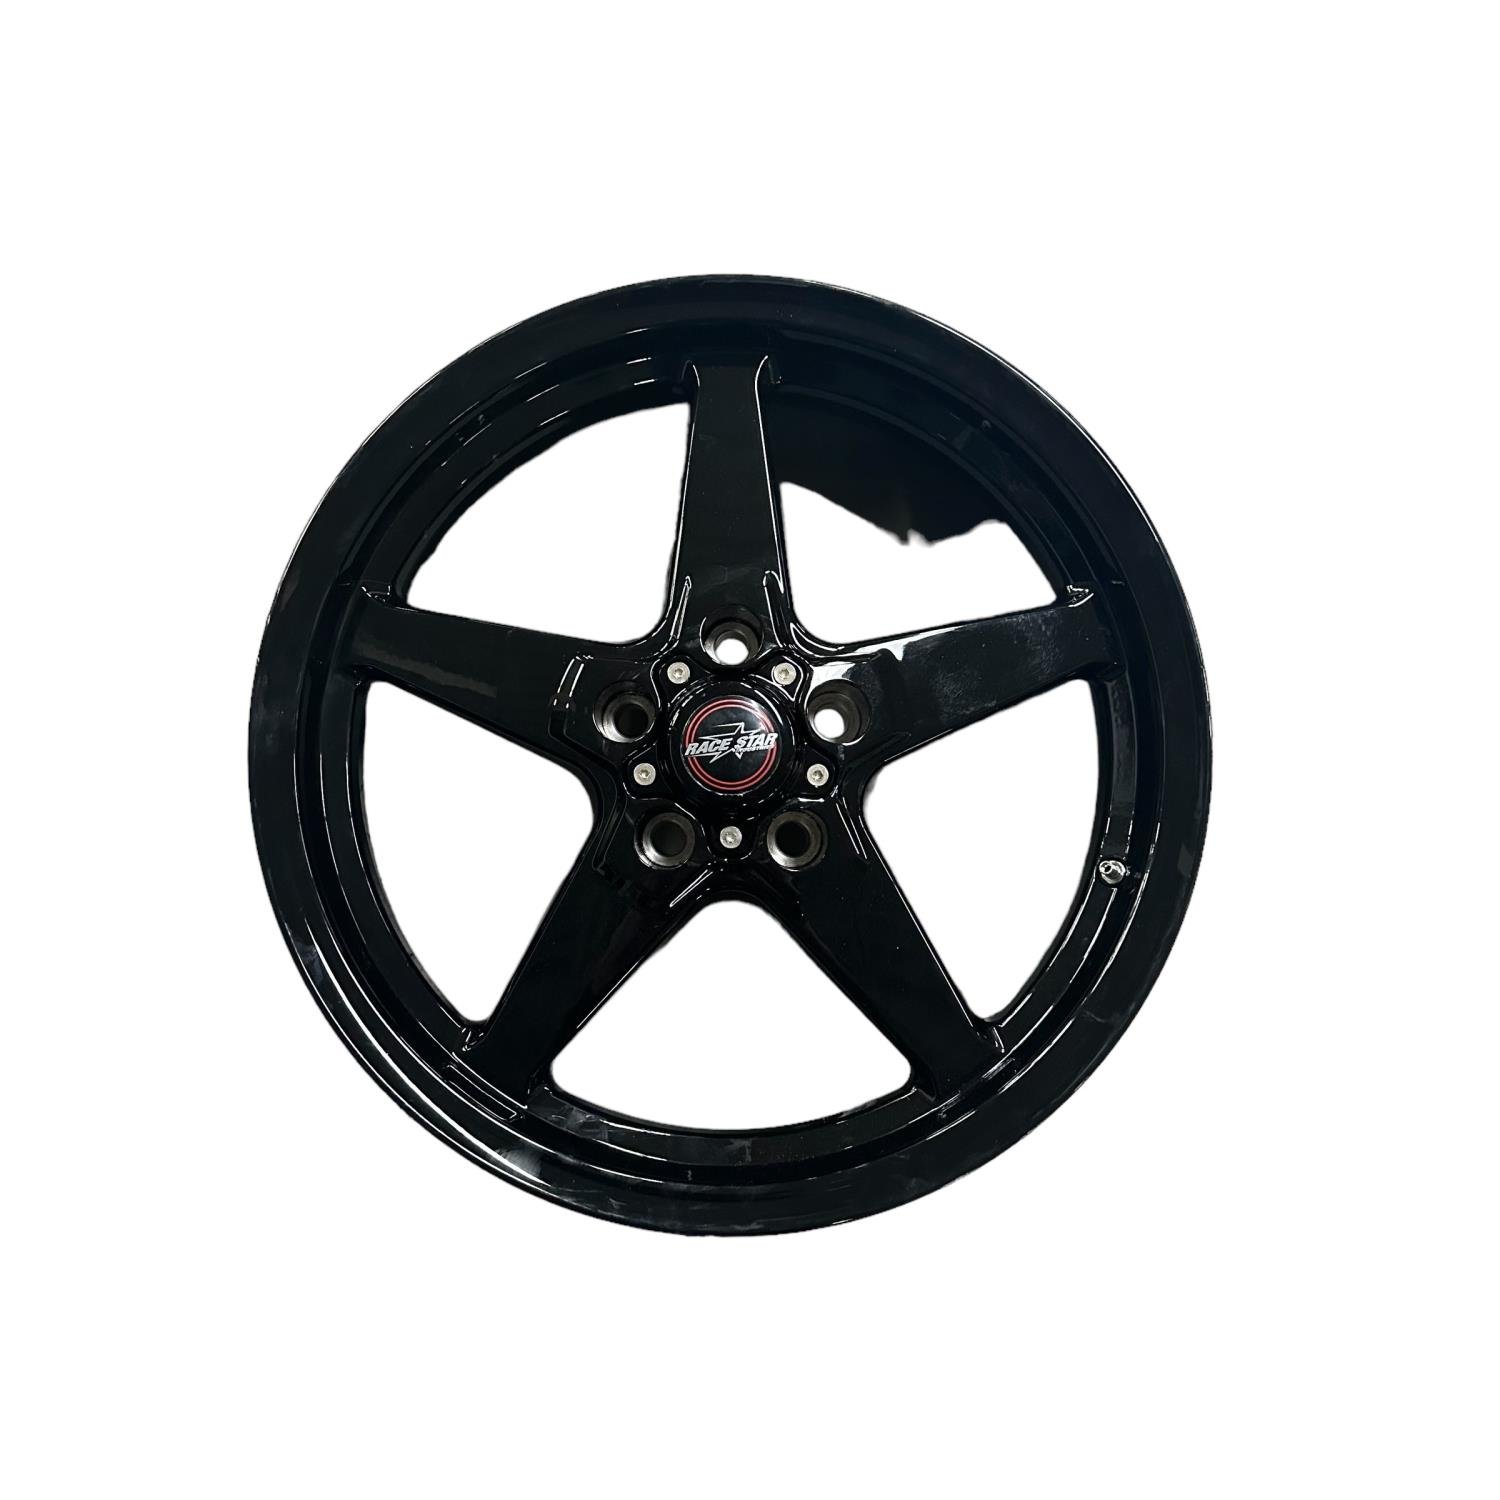 *BLEMISHED 92 Series Drag Star Bracket Racer Wheel Size: 18" x 5"